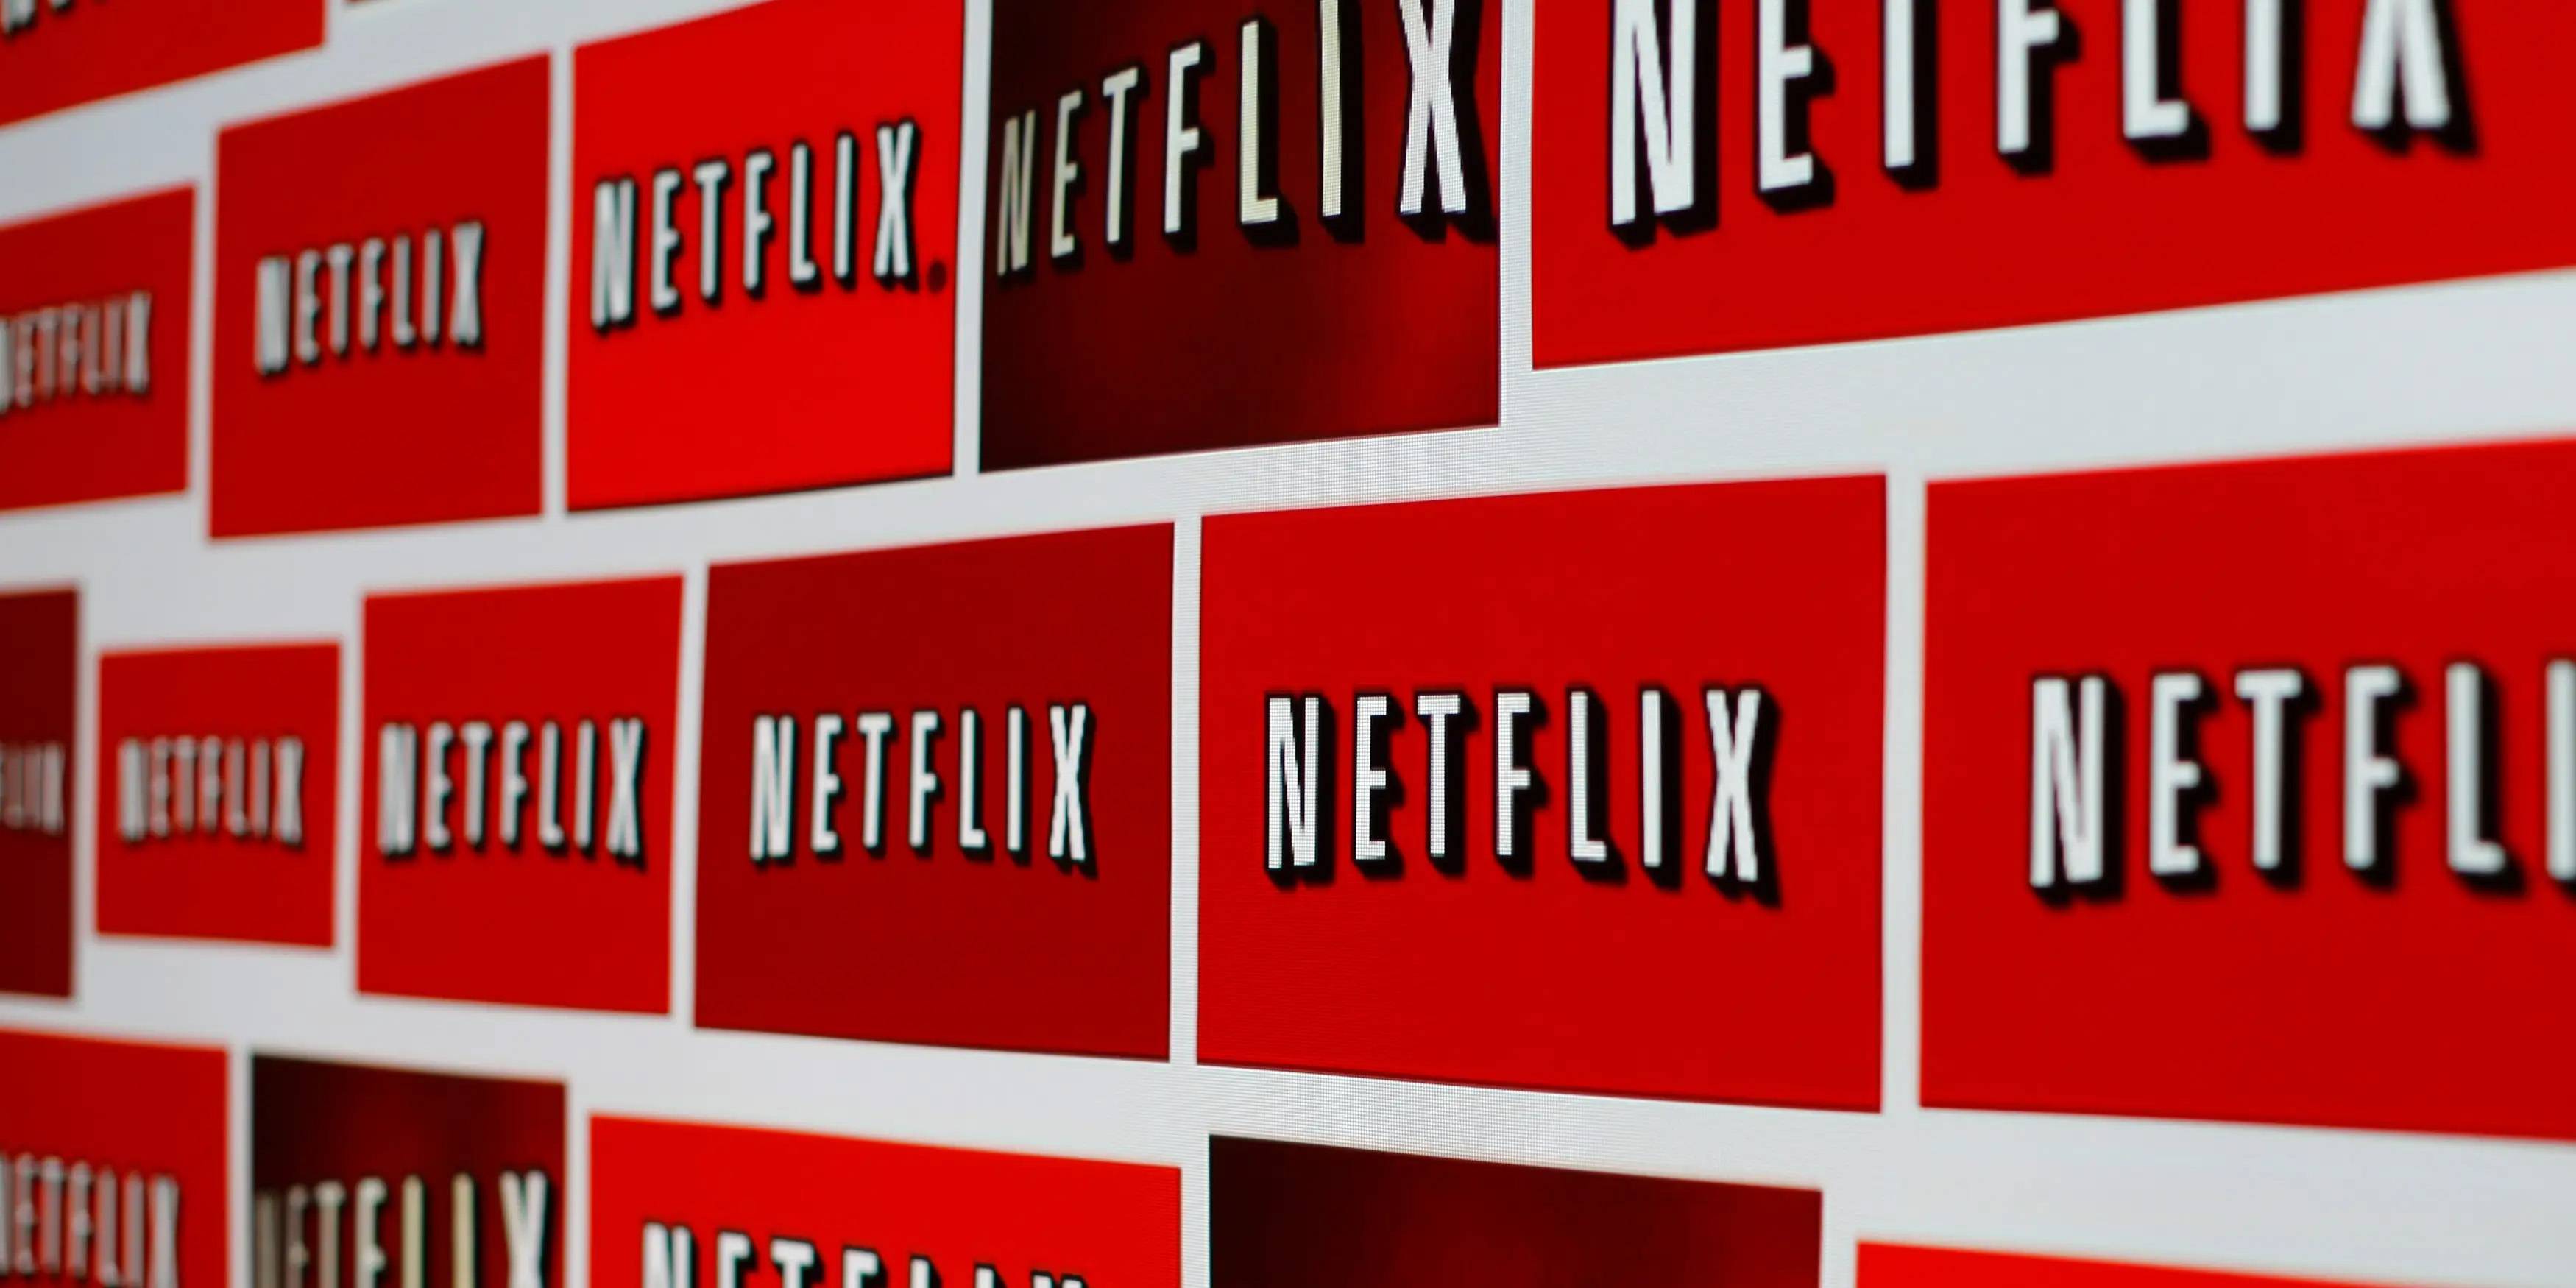 Reuters - La valutazione a cinque stelle e i Mi piace utilizzati da “Aiyou Teng” sono obsoleti e Netflix vuole sovvertire il sistema di classificazione dei media in streaming